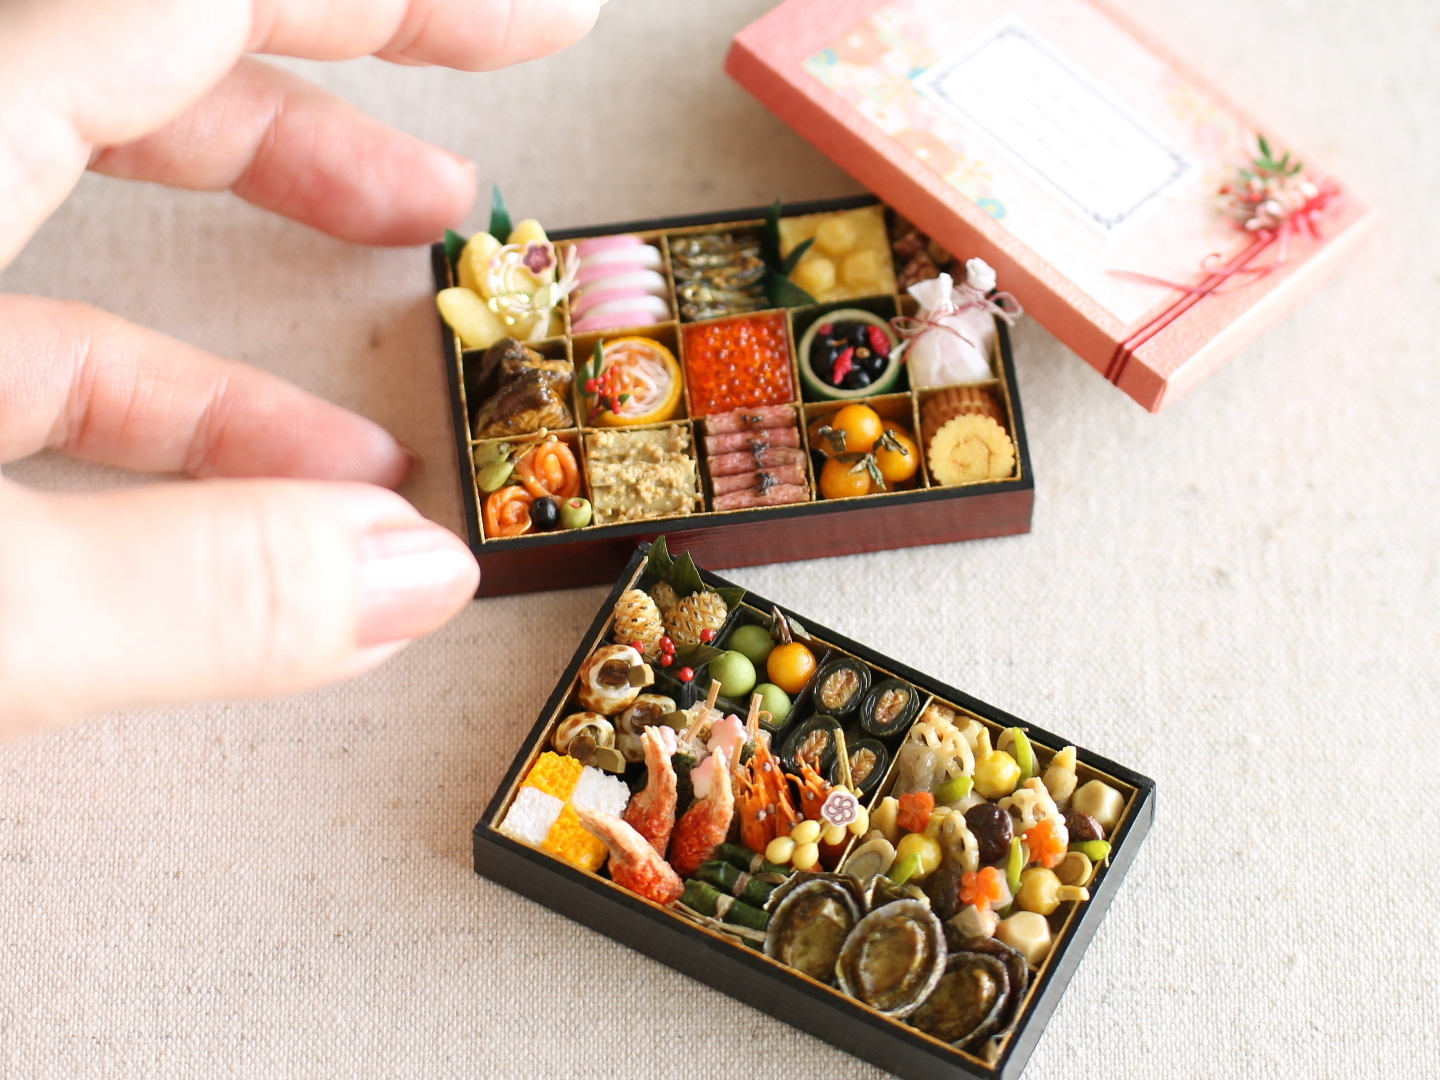 miniature 2 和 おせち 和食 寿司 船盛 お子様ランチ - shibazukeparipariのミニチュア 食品サンプル